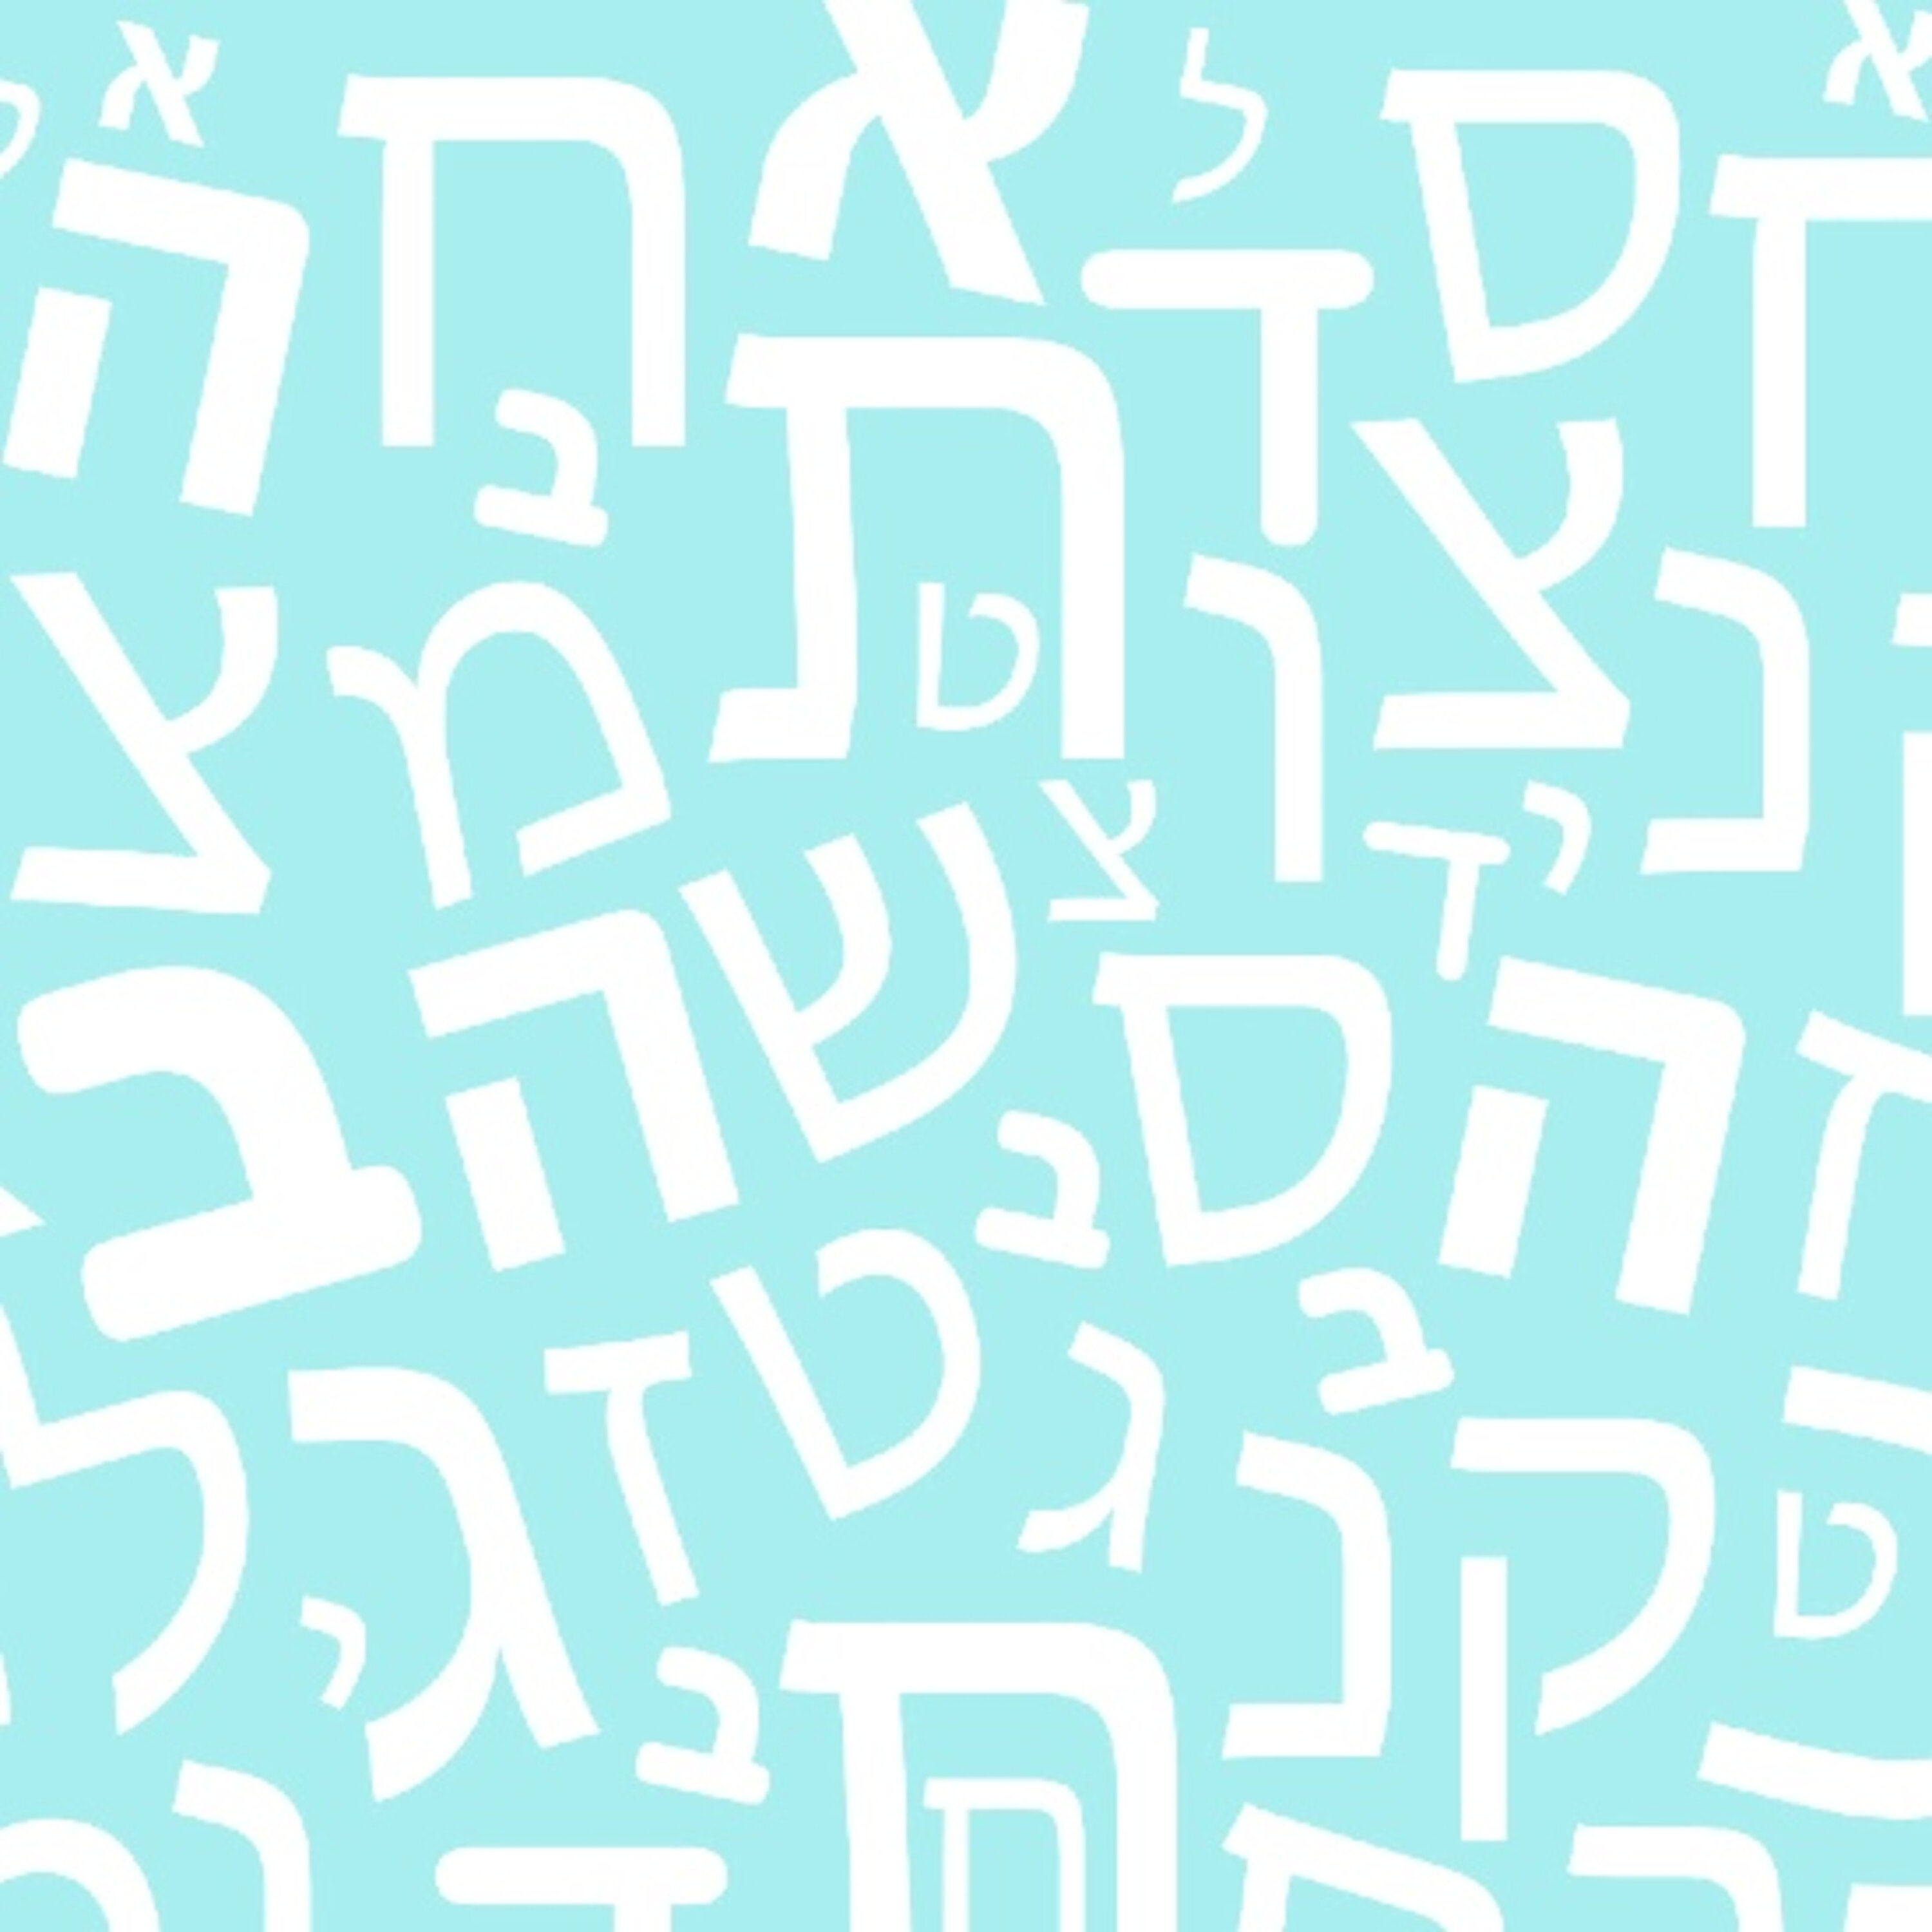 מאיפה הגיעו המילים לשפה העברית